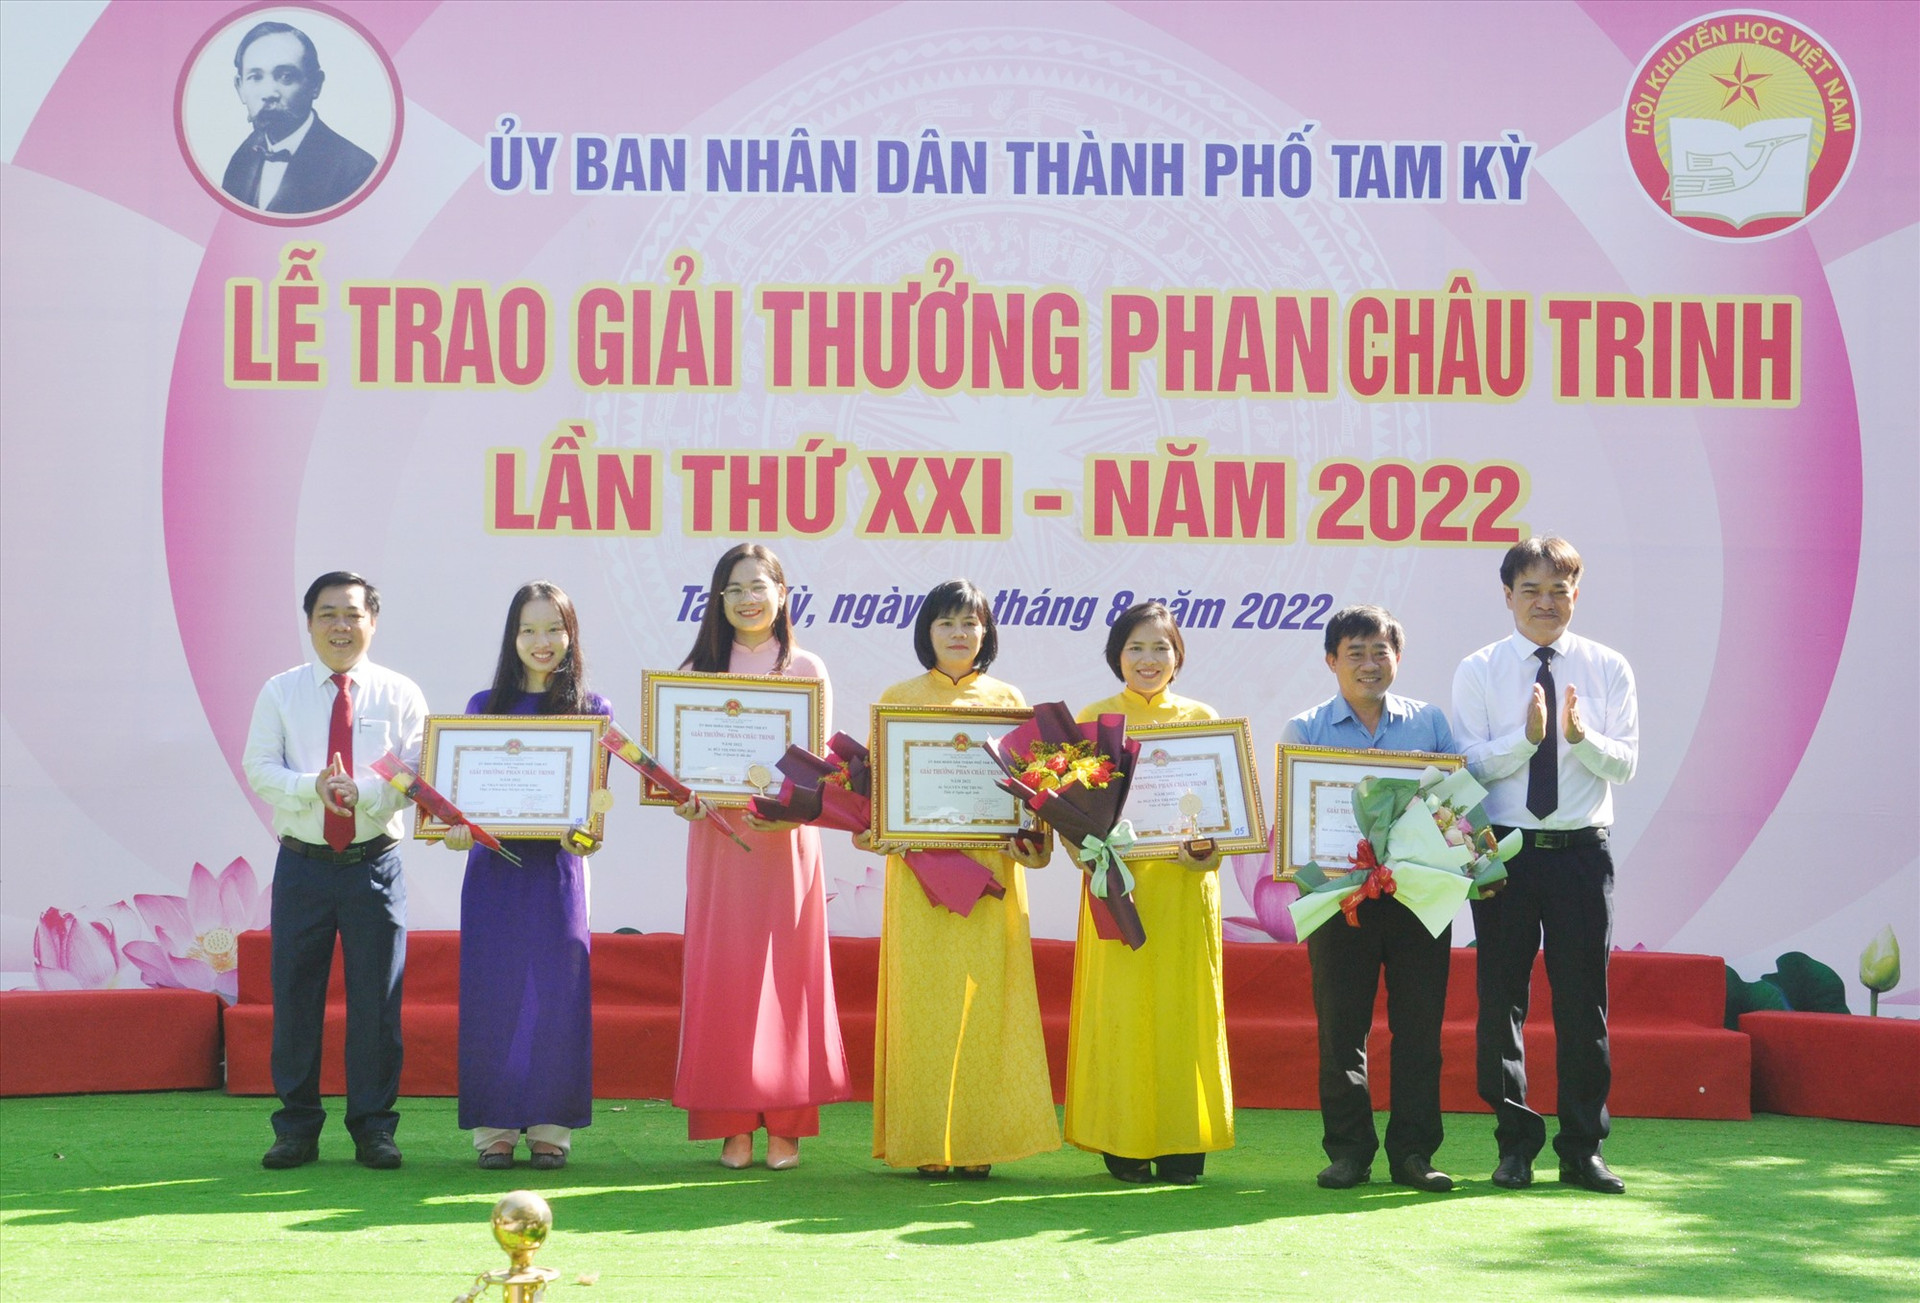 Tam Kỳ vừa trao giai thưởng Phan Châu Trinh năm 2022 cho 86 cá nhân. Ảnh: X.P